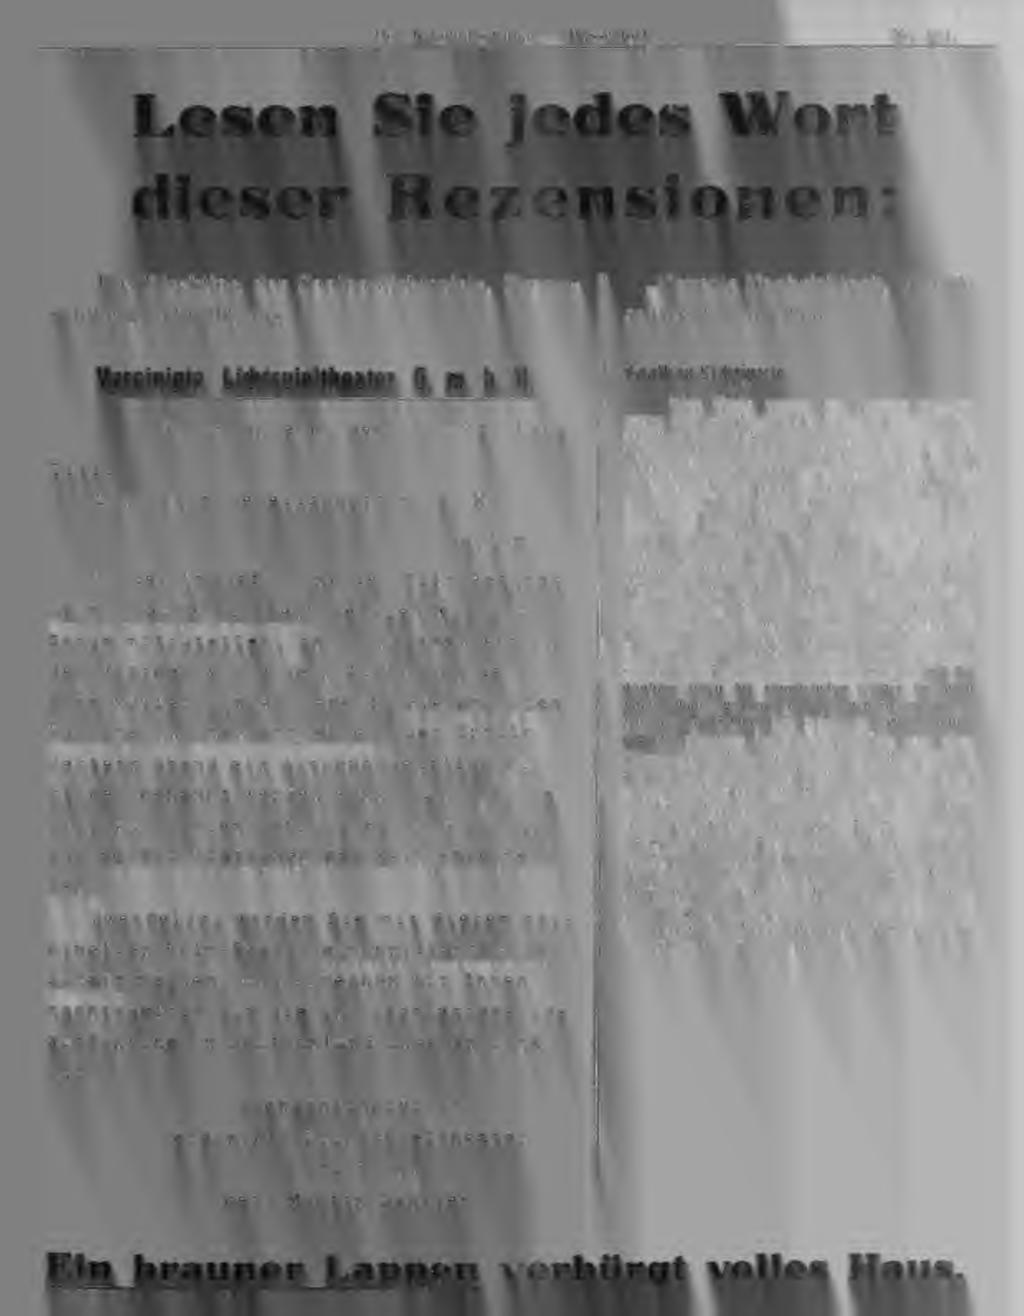 Braunschweig, den 23. Okt. 1315. Ti tl. Luna-Film-Oesellschaft m. b. H. Berlin Zu der Uraufführung des Filmsketches Ein brauner Lappen beeilen wir uns.